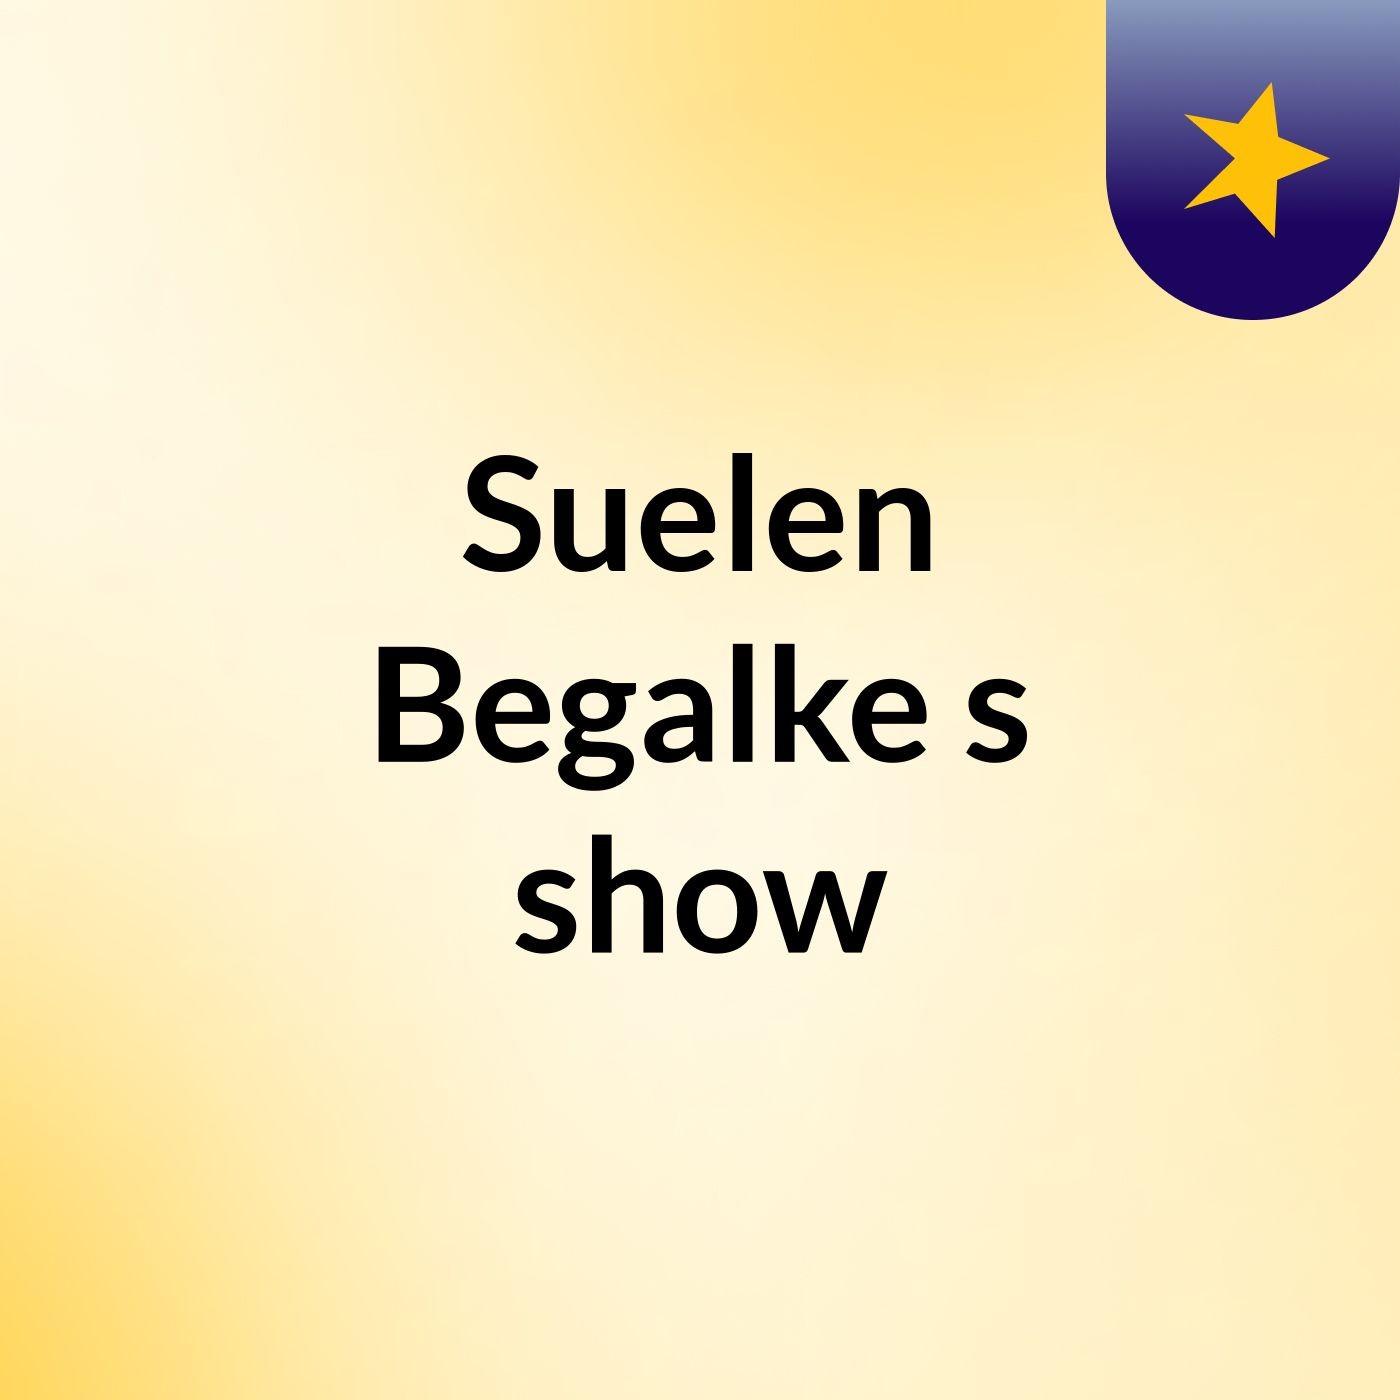 Suelen Begalke's show